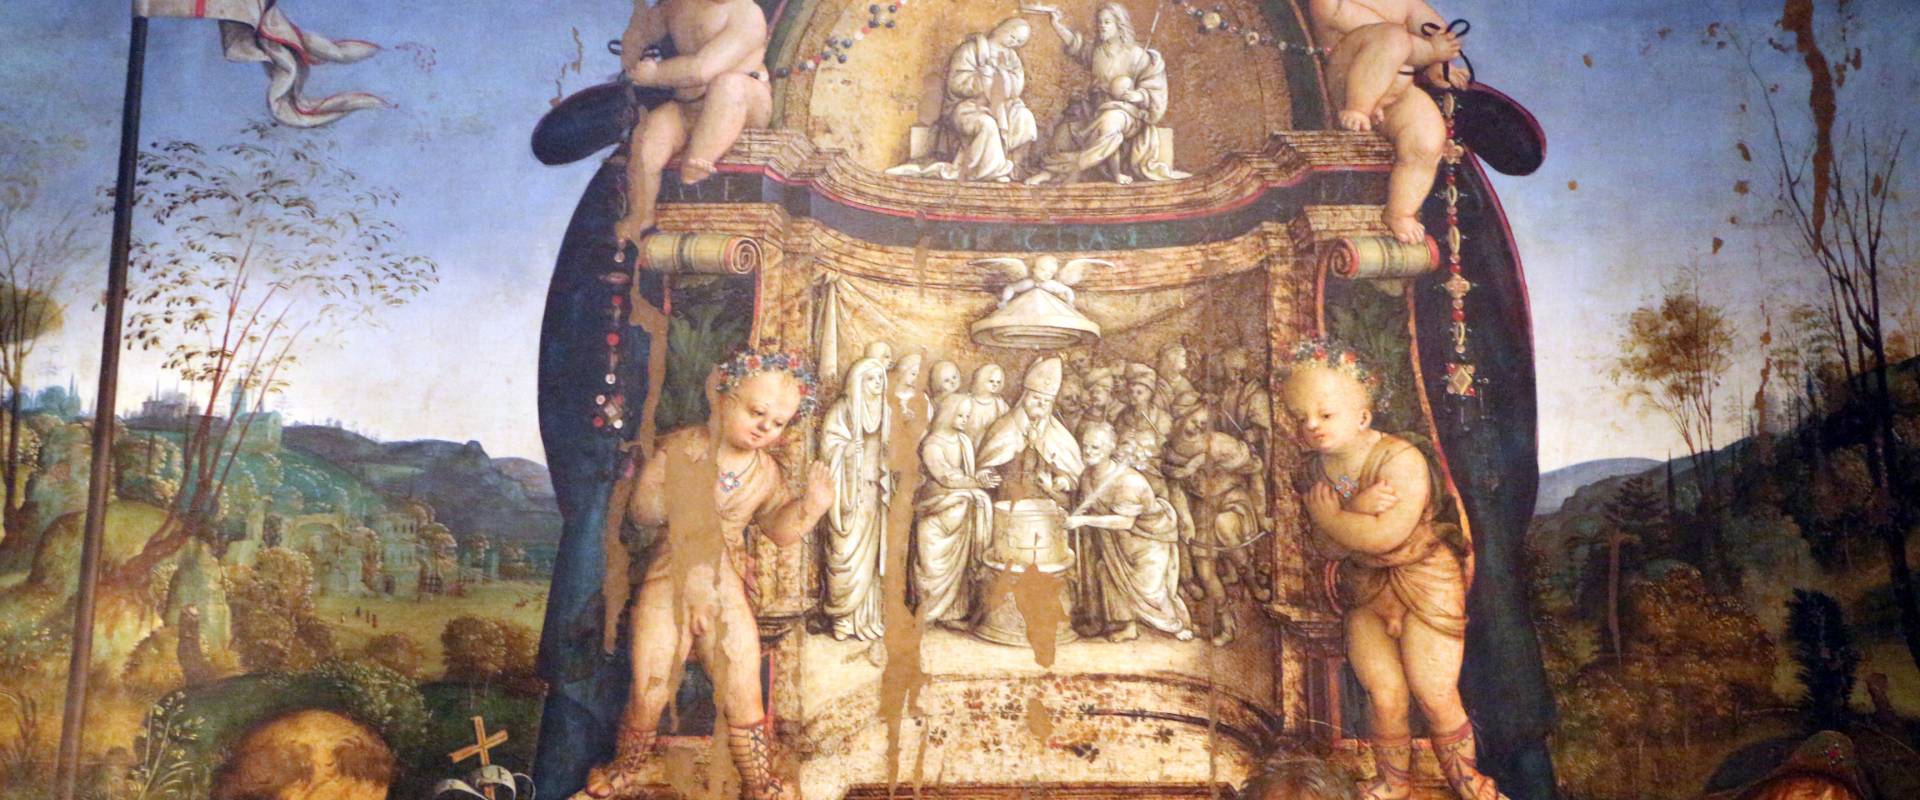 Amico aspertini, madonna in trono, santi e due devoti, 1504-05, dai ss. girolamo ed eustachio, 02,1 photo by Sailko